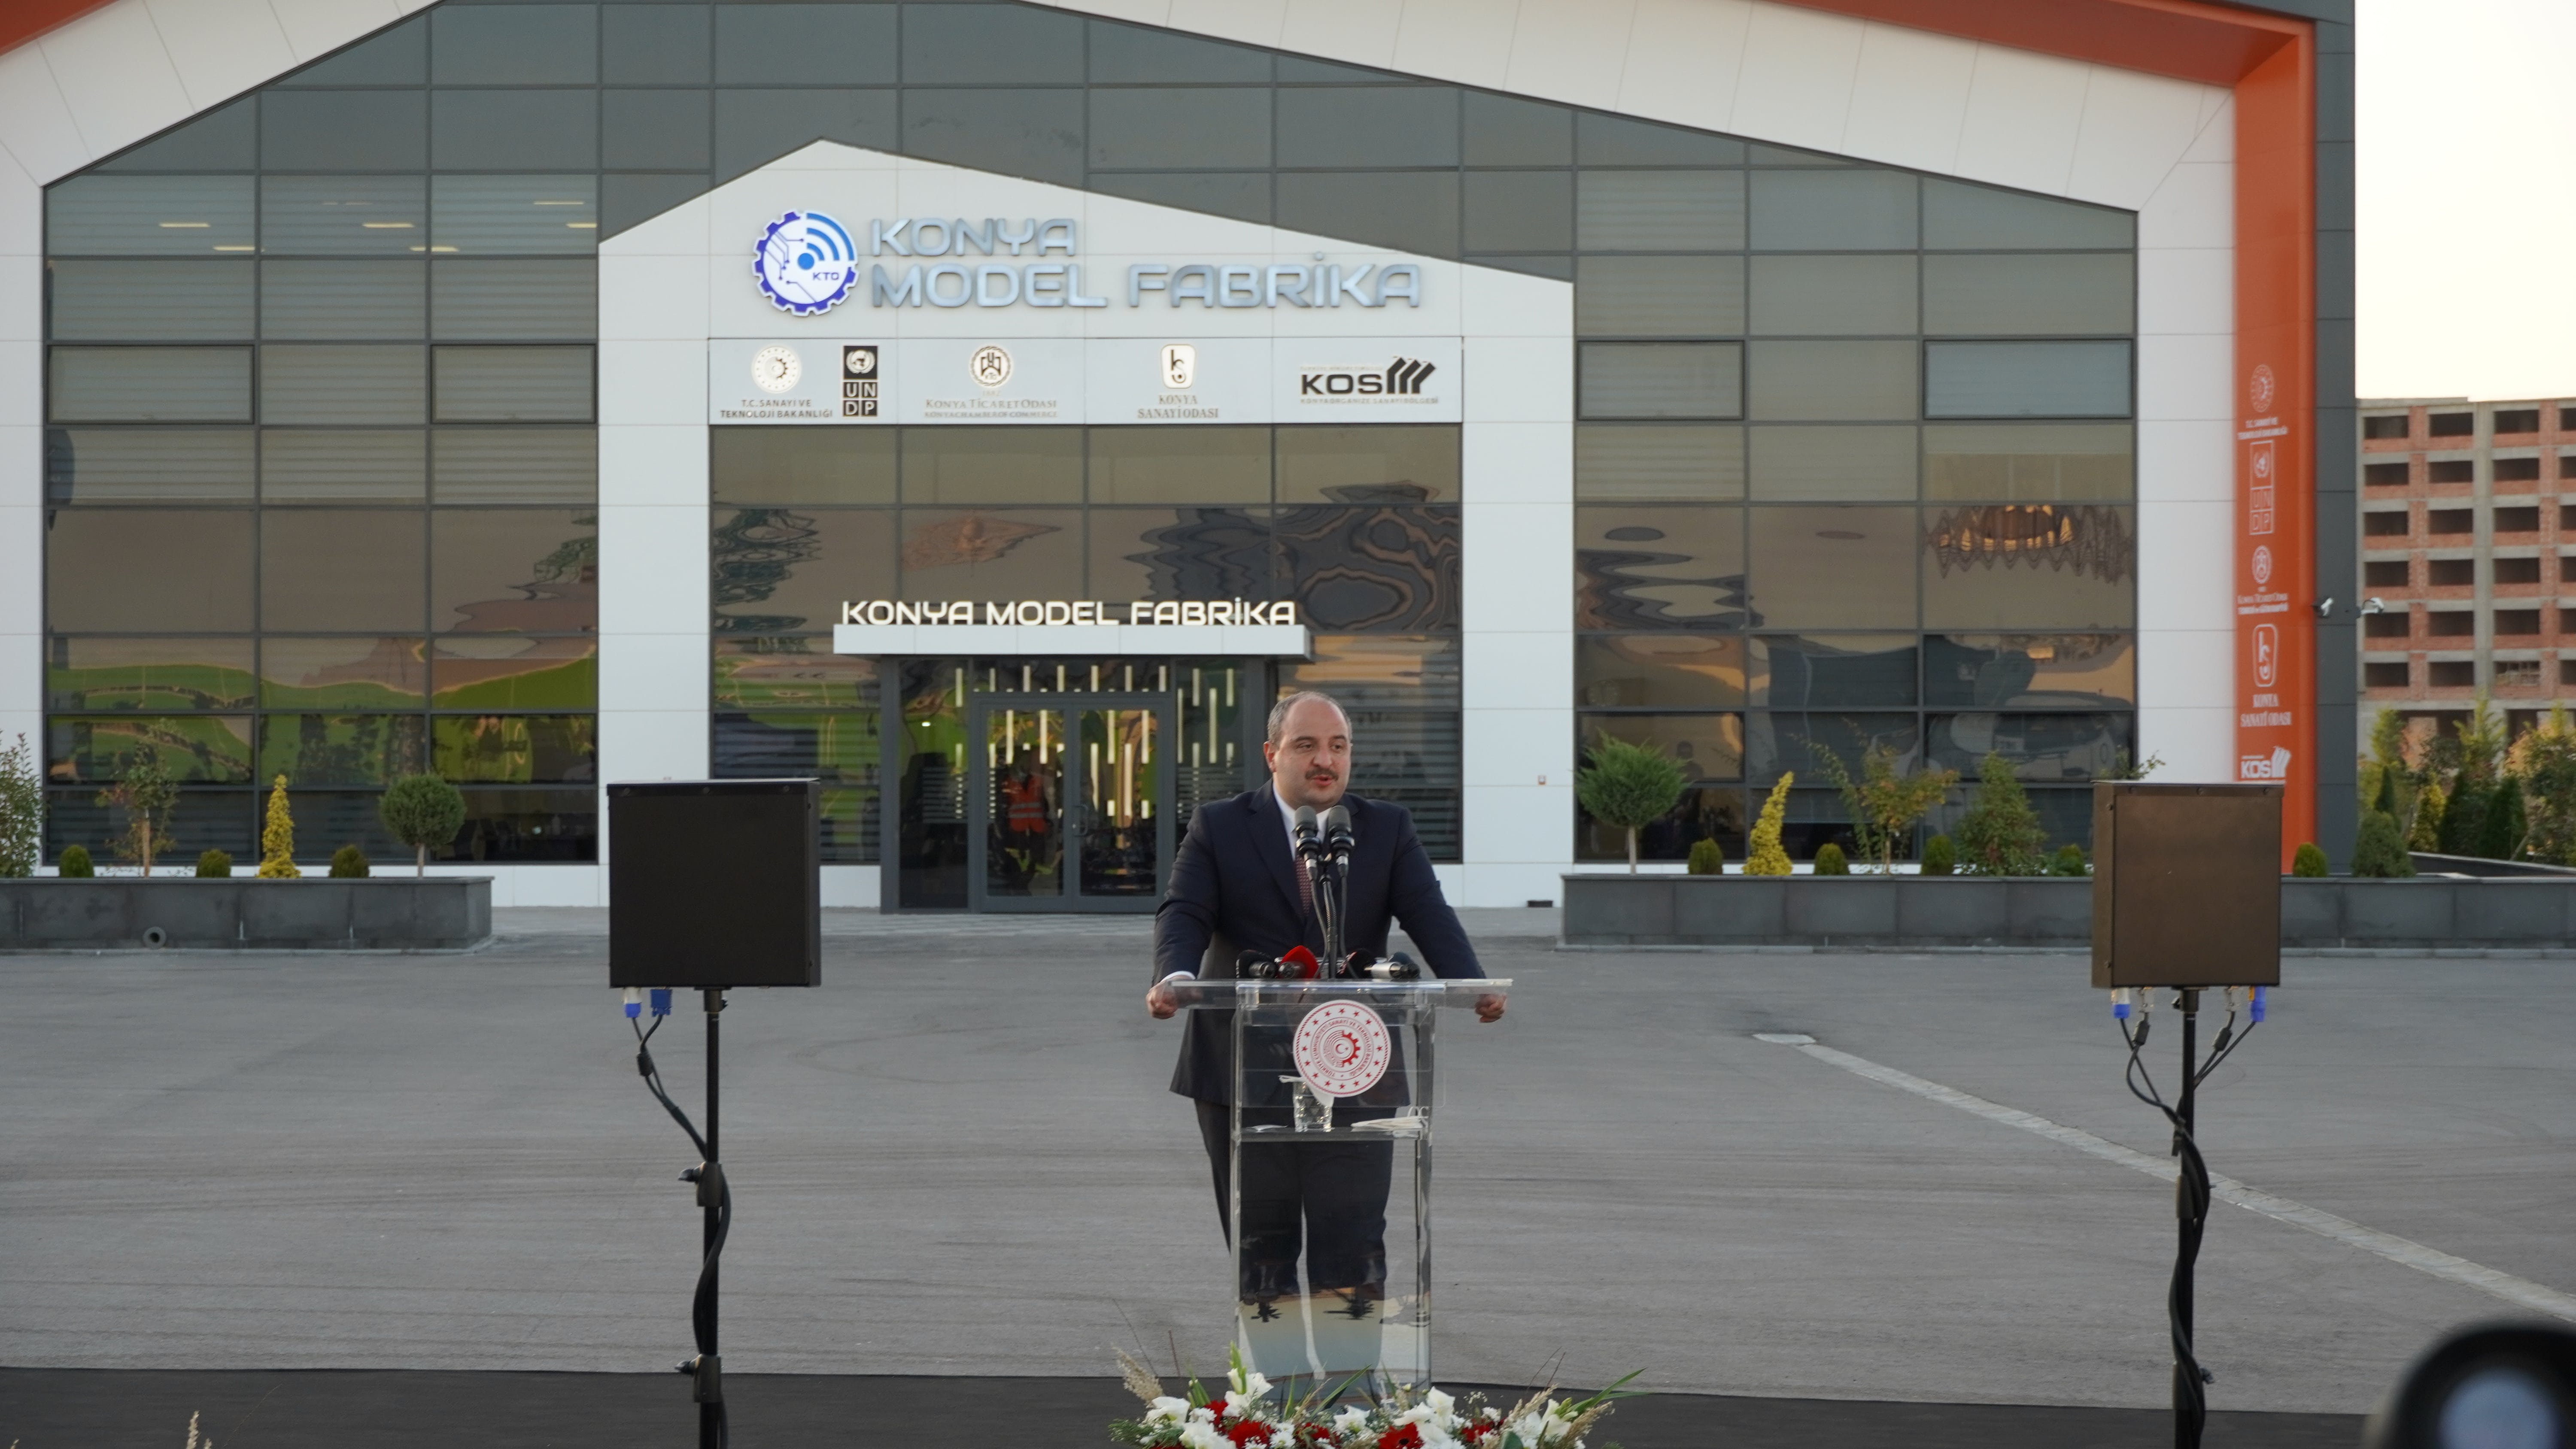 Model Fabrikamızın Açılışını T.C. Sanayi ve Teknoloji Bakanımız Sayın Mustafa VARANK'ın katılımıyla gerçekleştirdik